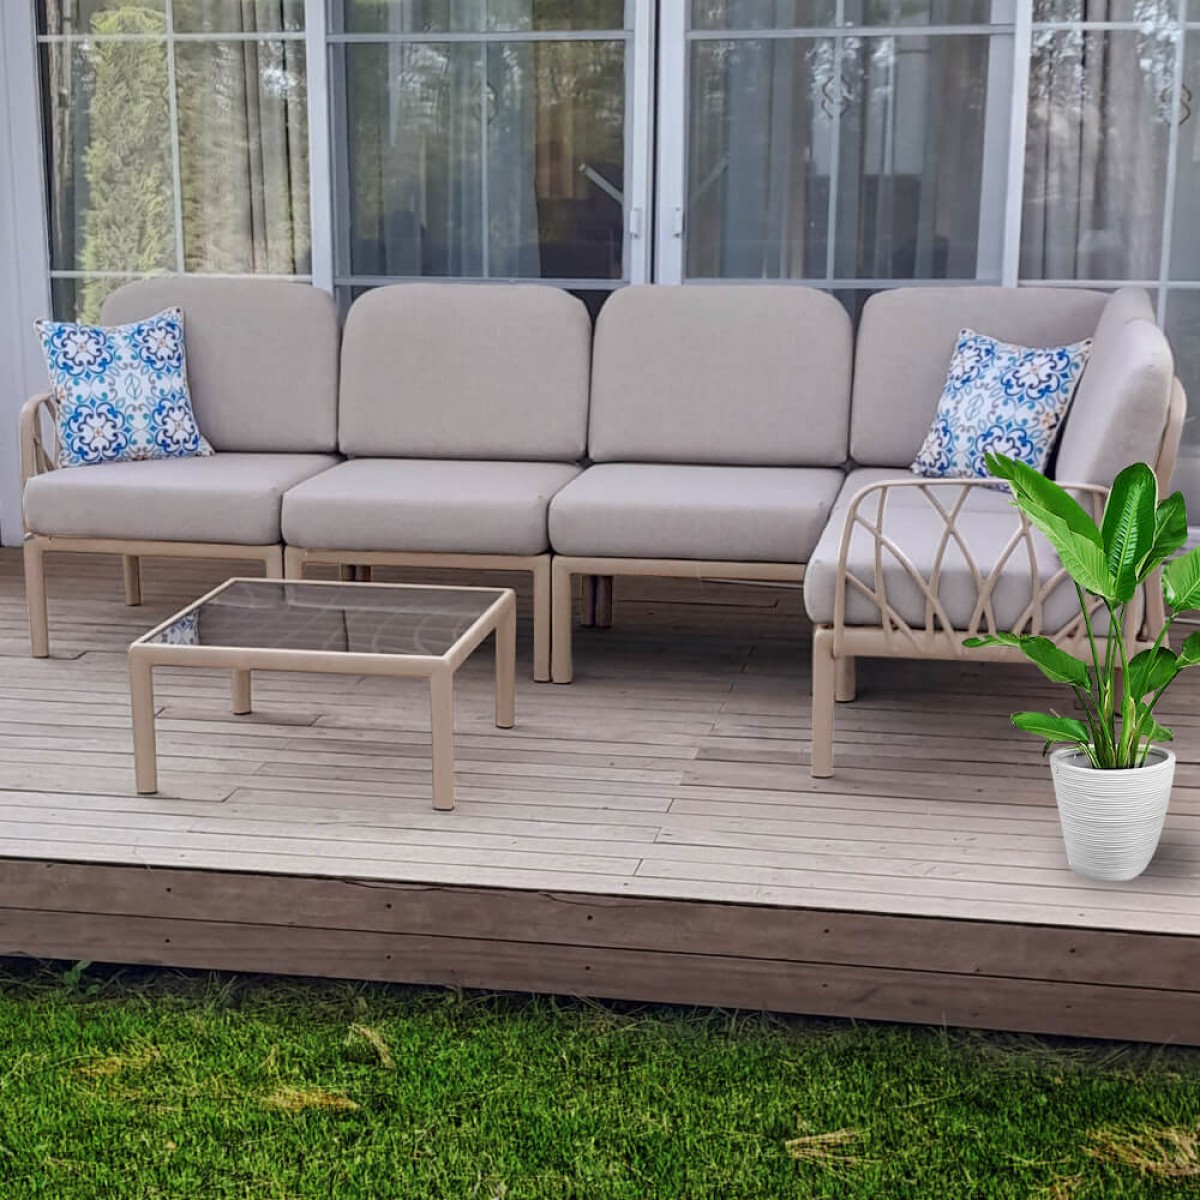 Bahex Garda Köşe Modüler Sofa Bahçe Balkon Oturma Grubu L Set Luxury Outdoor